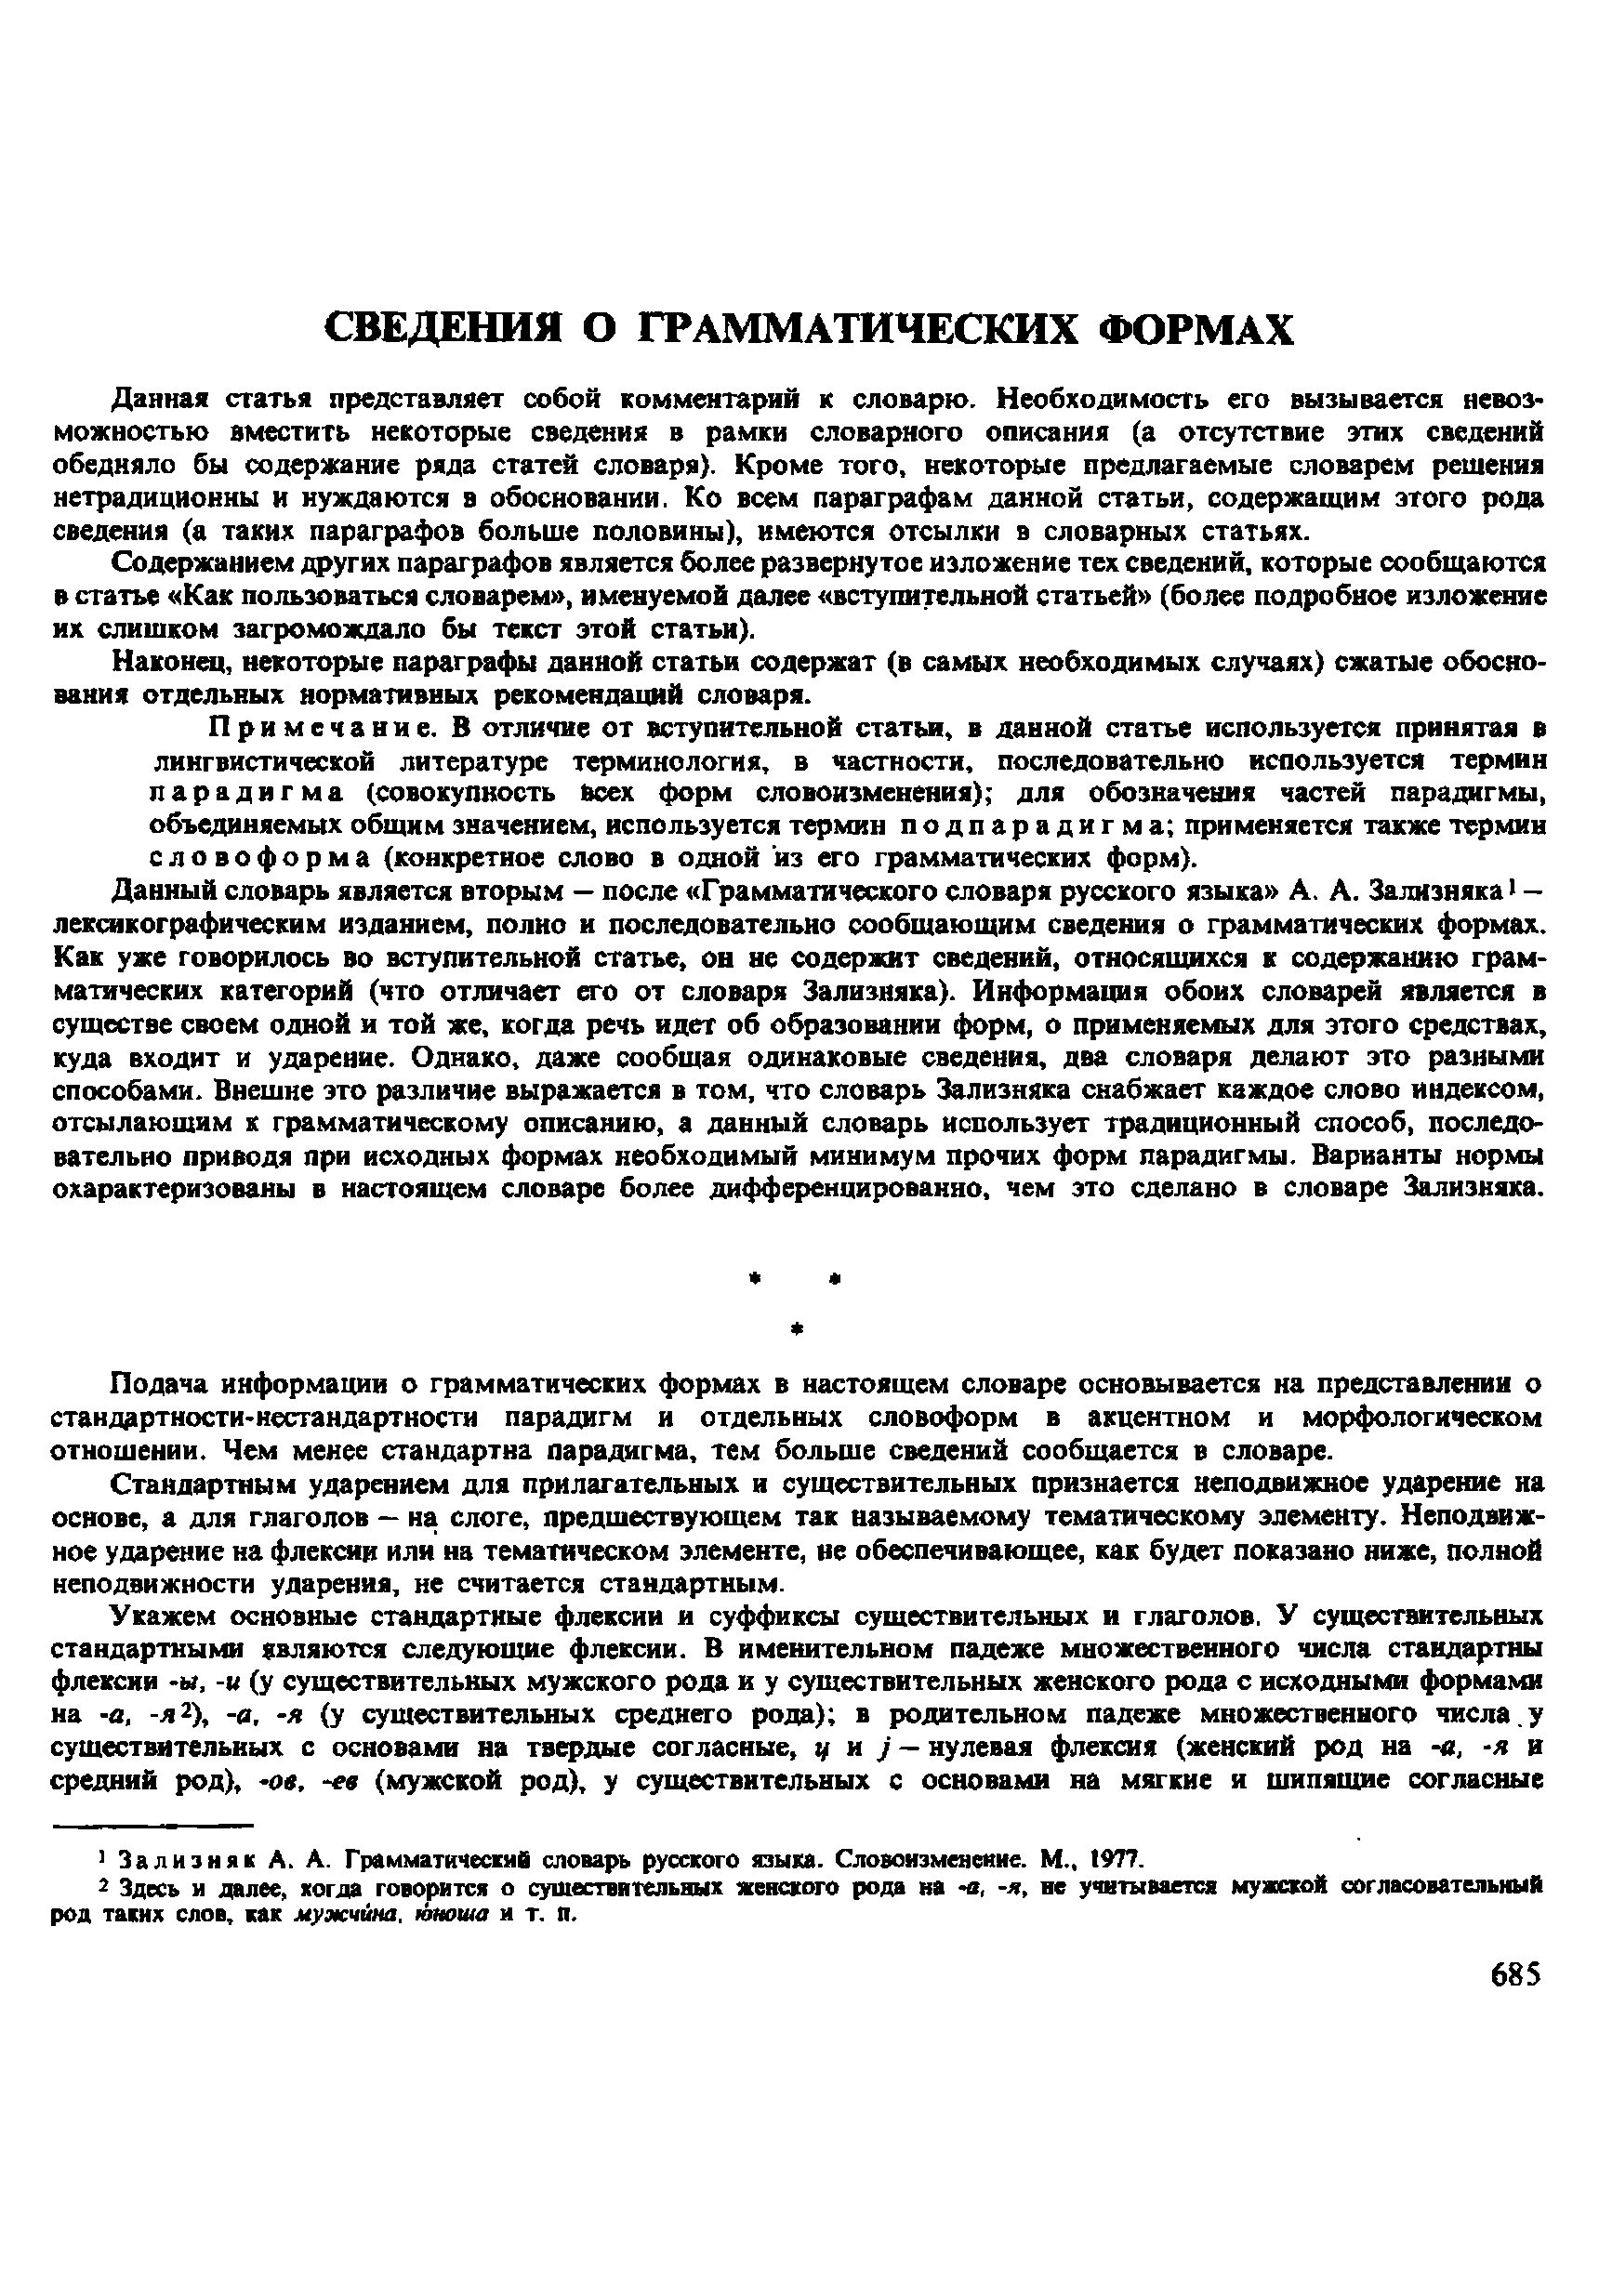 Фотокопия pdf / скан страницы 683 орфоэпического словаря под редакцией Аванесова (4 издание, 1988 год)